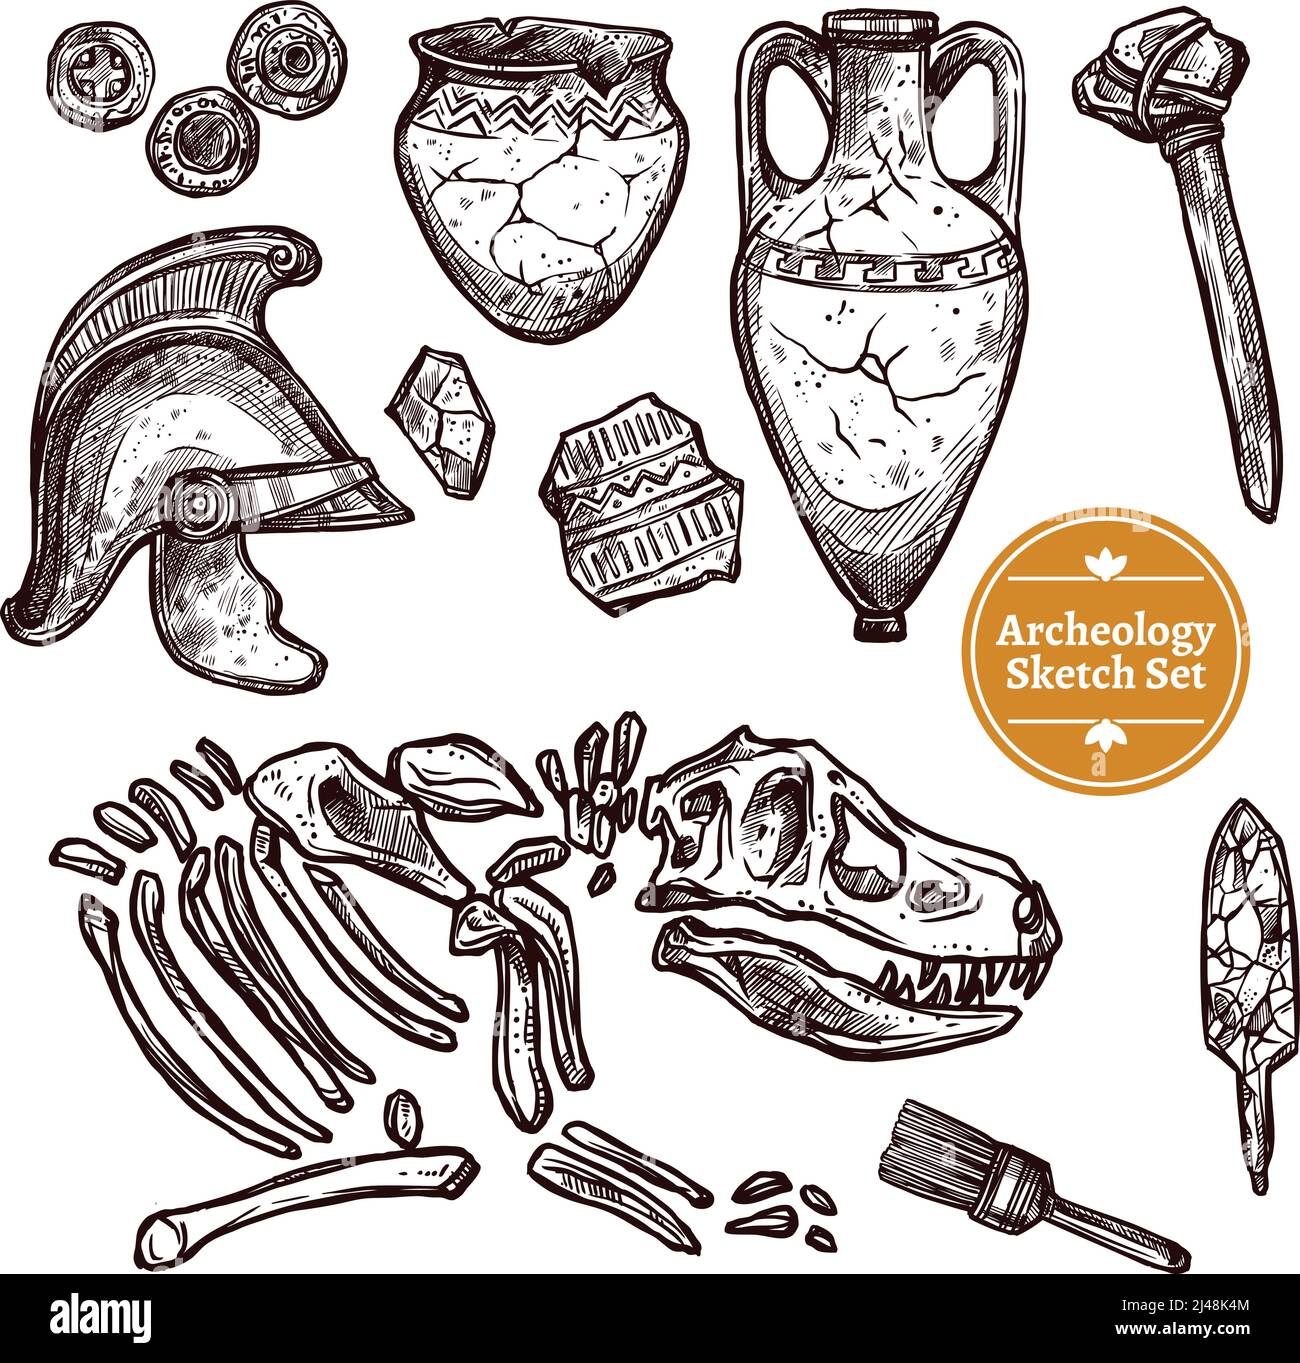 Archeologia disegno a mano set di paleontologico e archeologico antico trova l'illustrazione vettoriale isolata Illustrazione Vettoriale